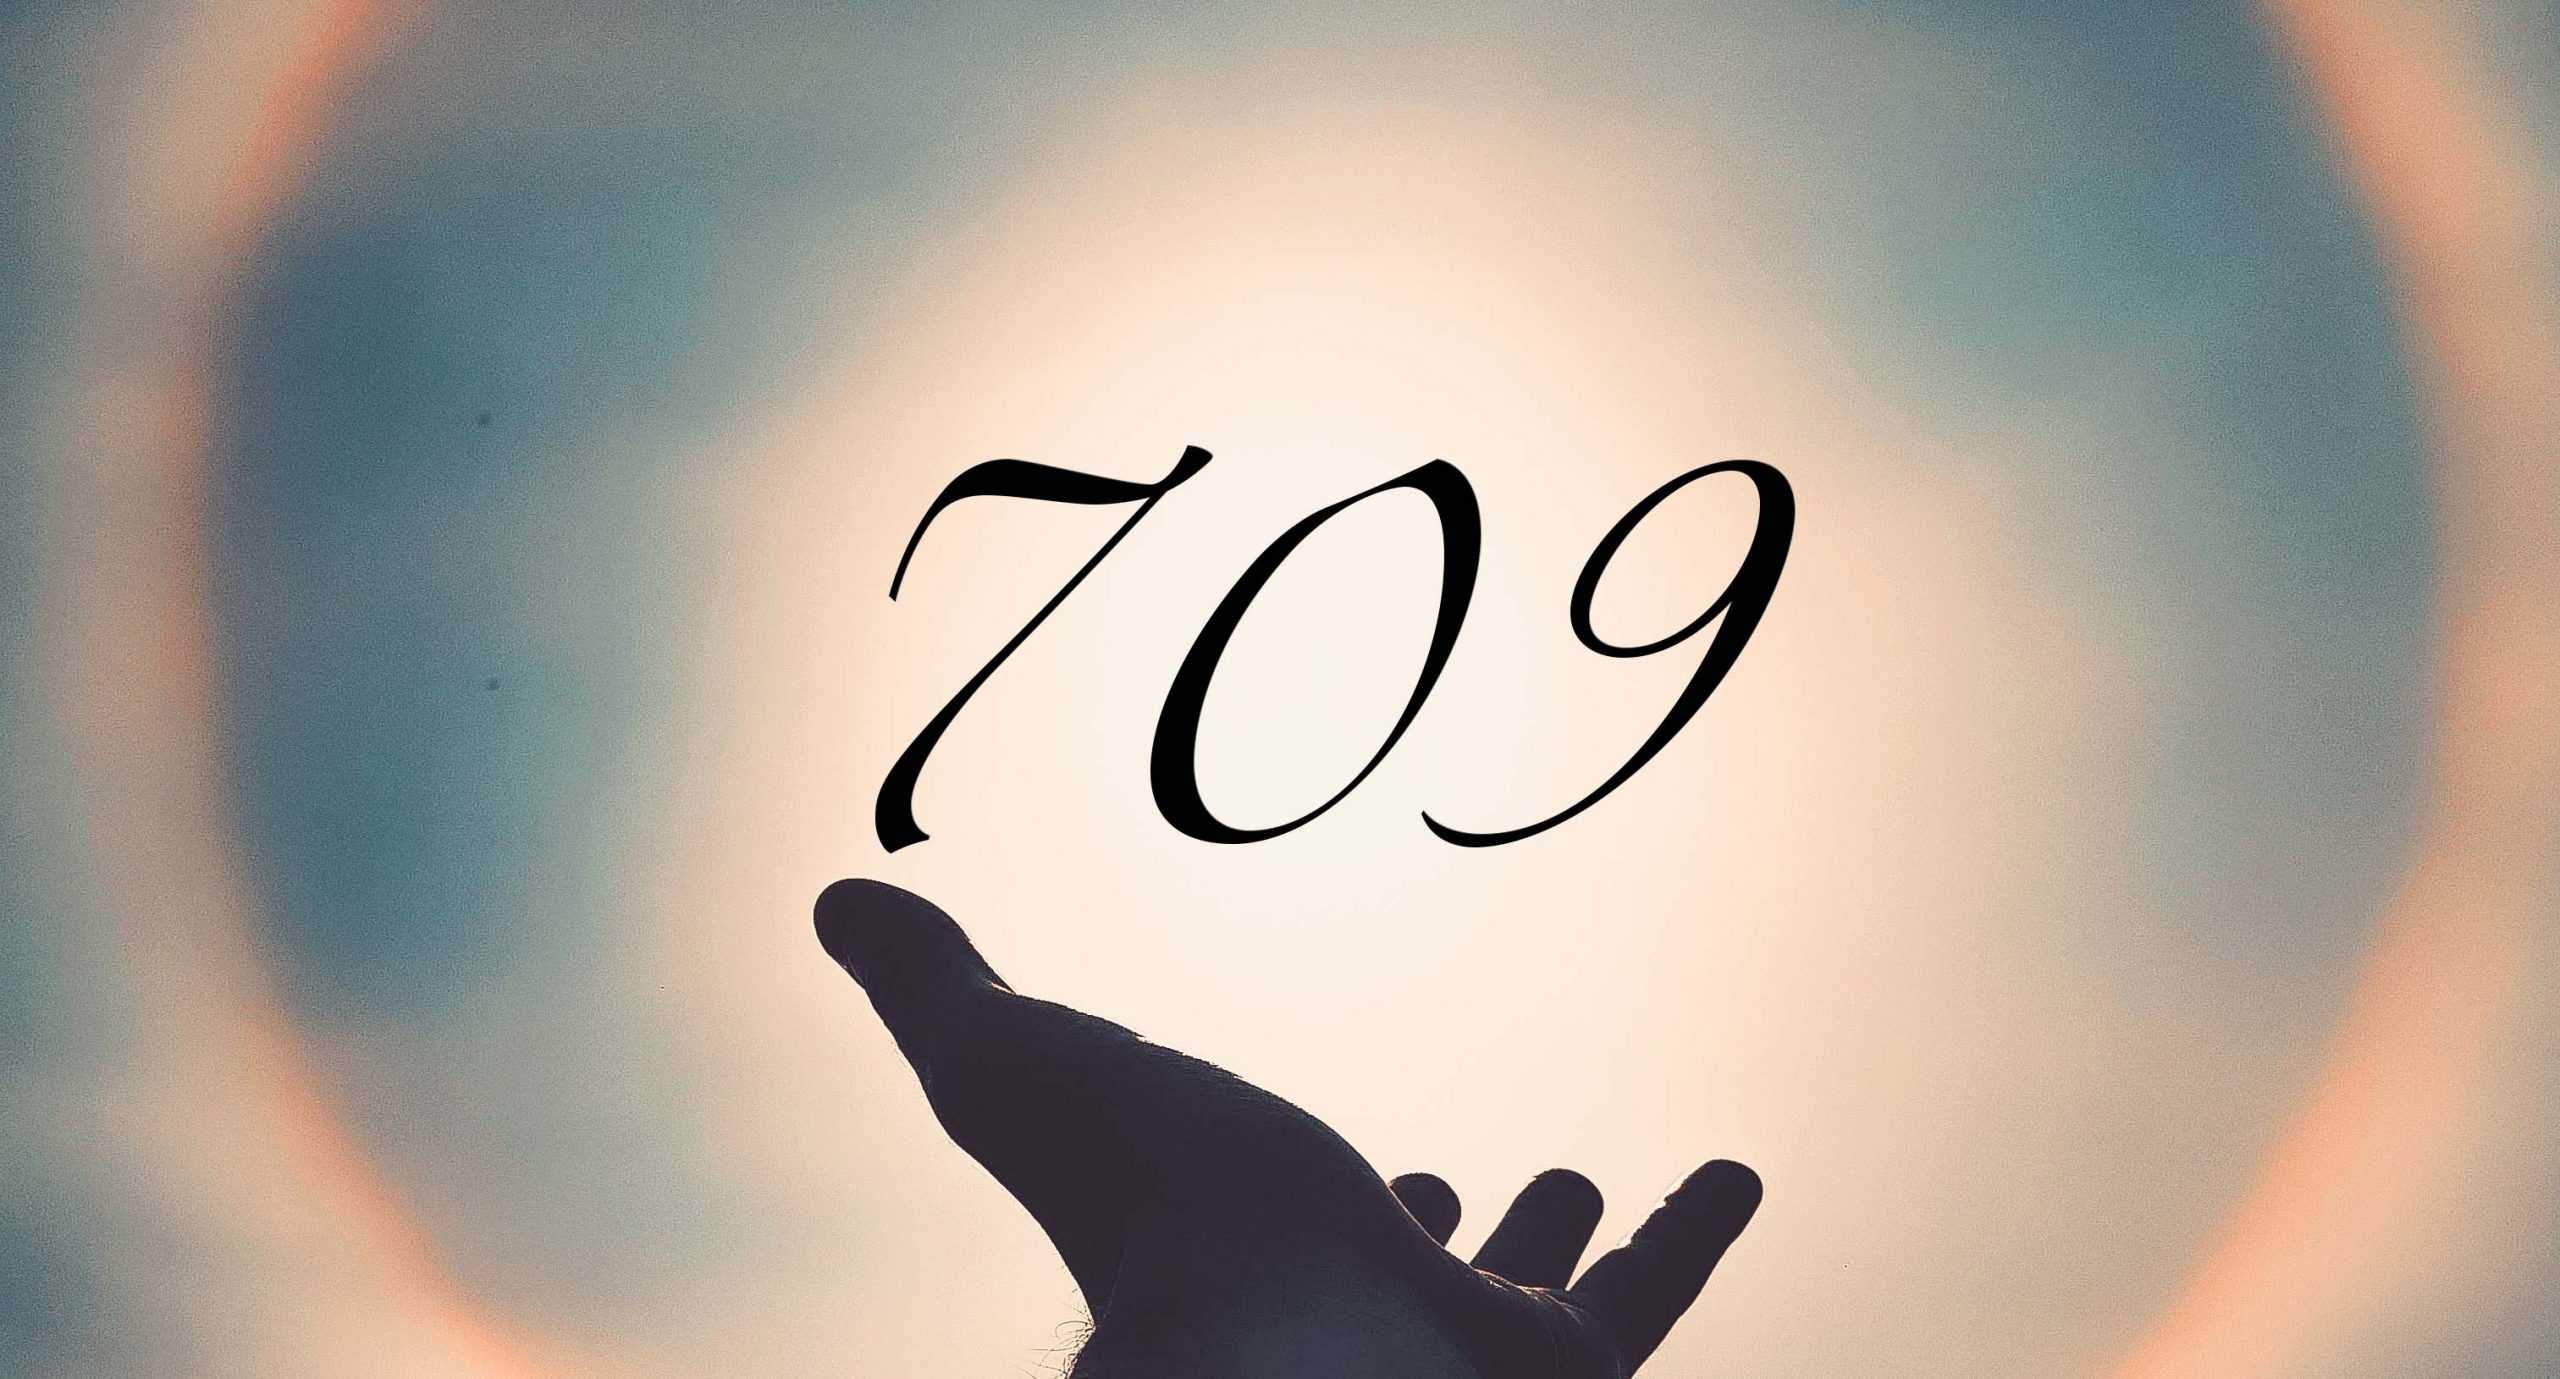 Signification du nombre 709